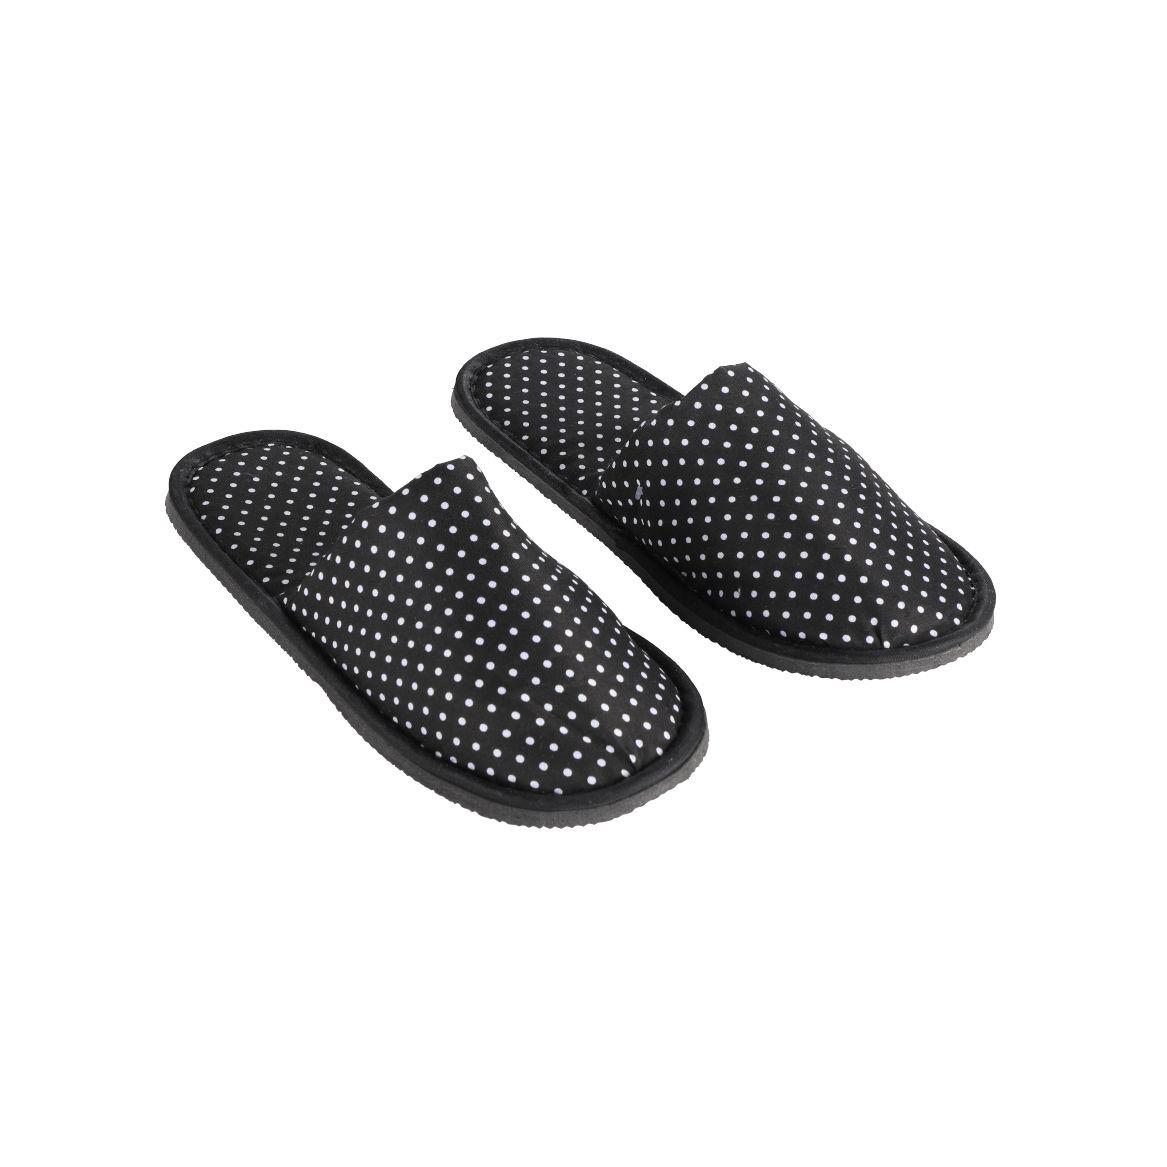 รองเท้าสลิปเปอร์ รุ่นเค-มินิทู (ขนาด 28 ซม.) - สีดำ